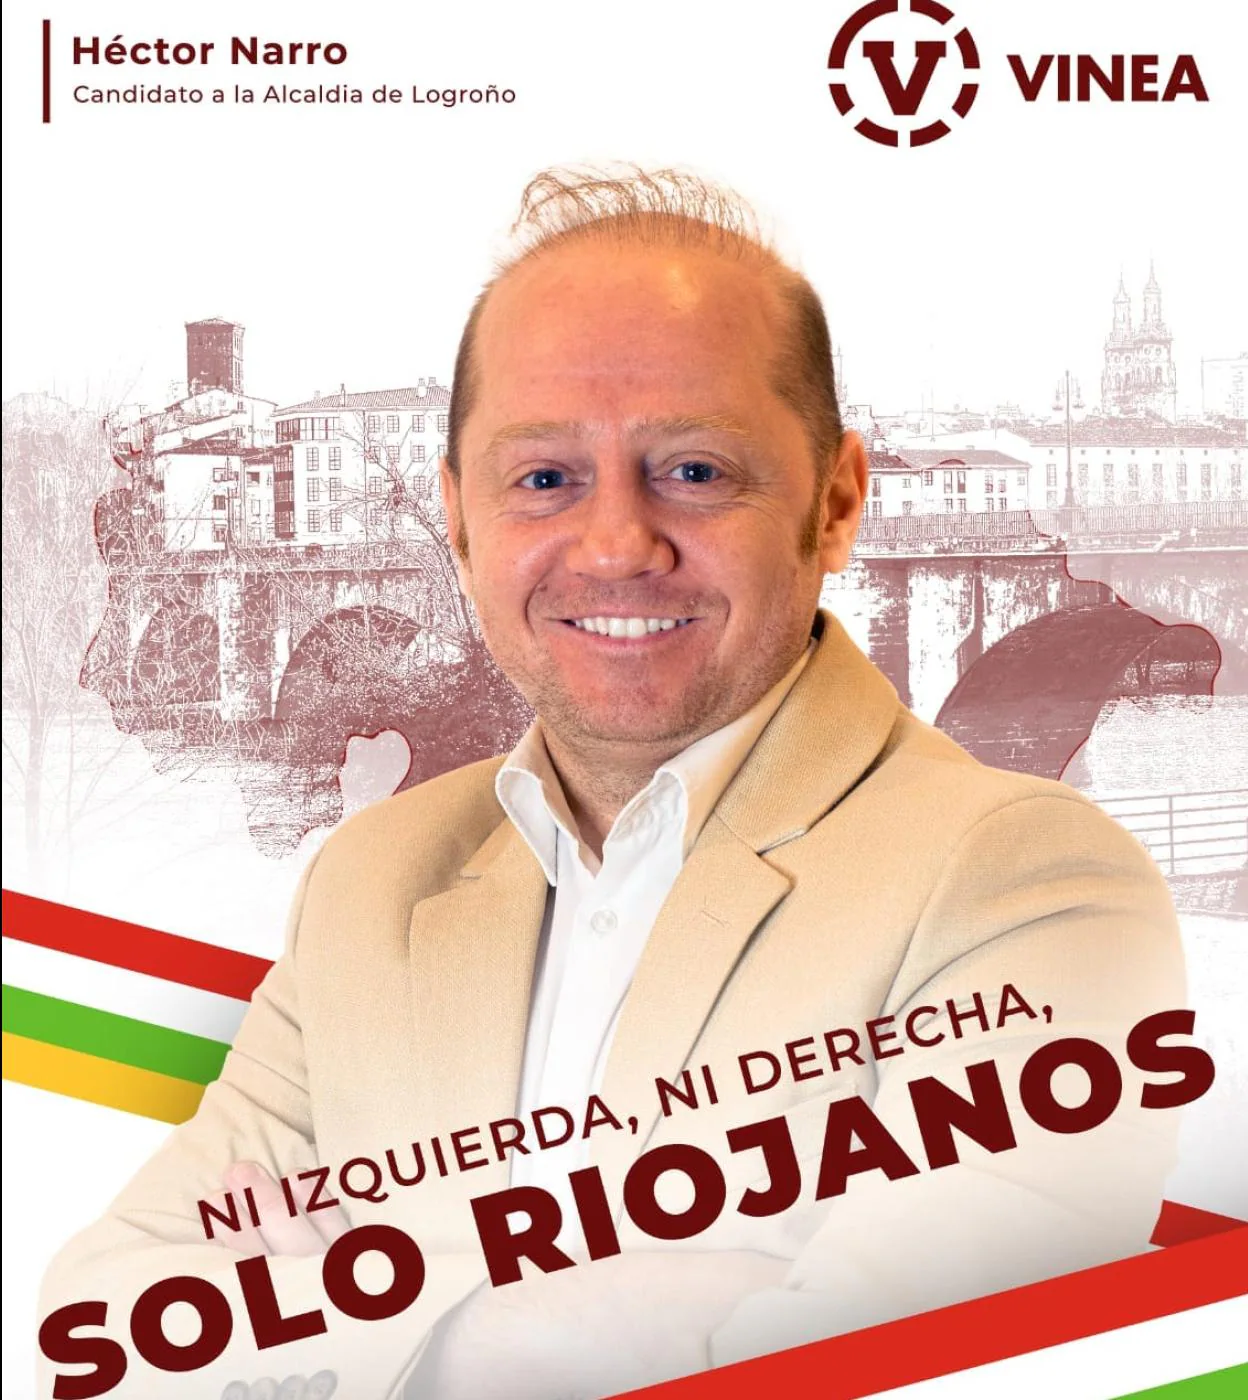 Uno de 'Los Pecos Riojanos', candidato a alcalde de Logroño